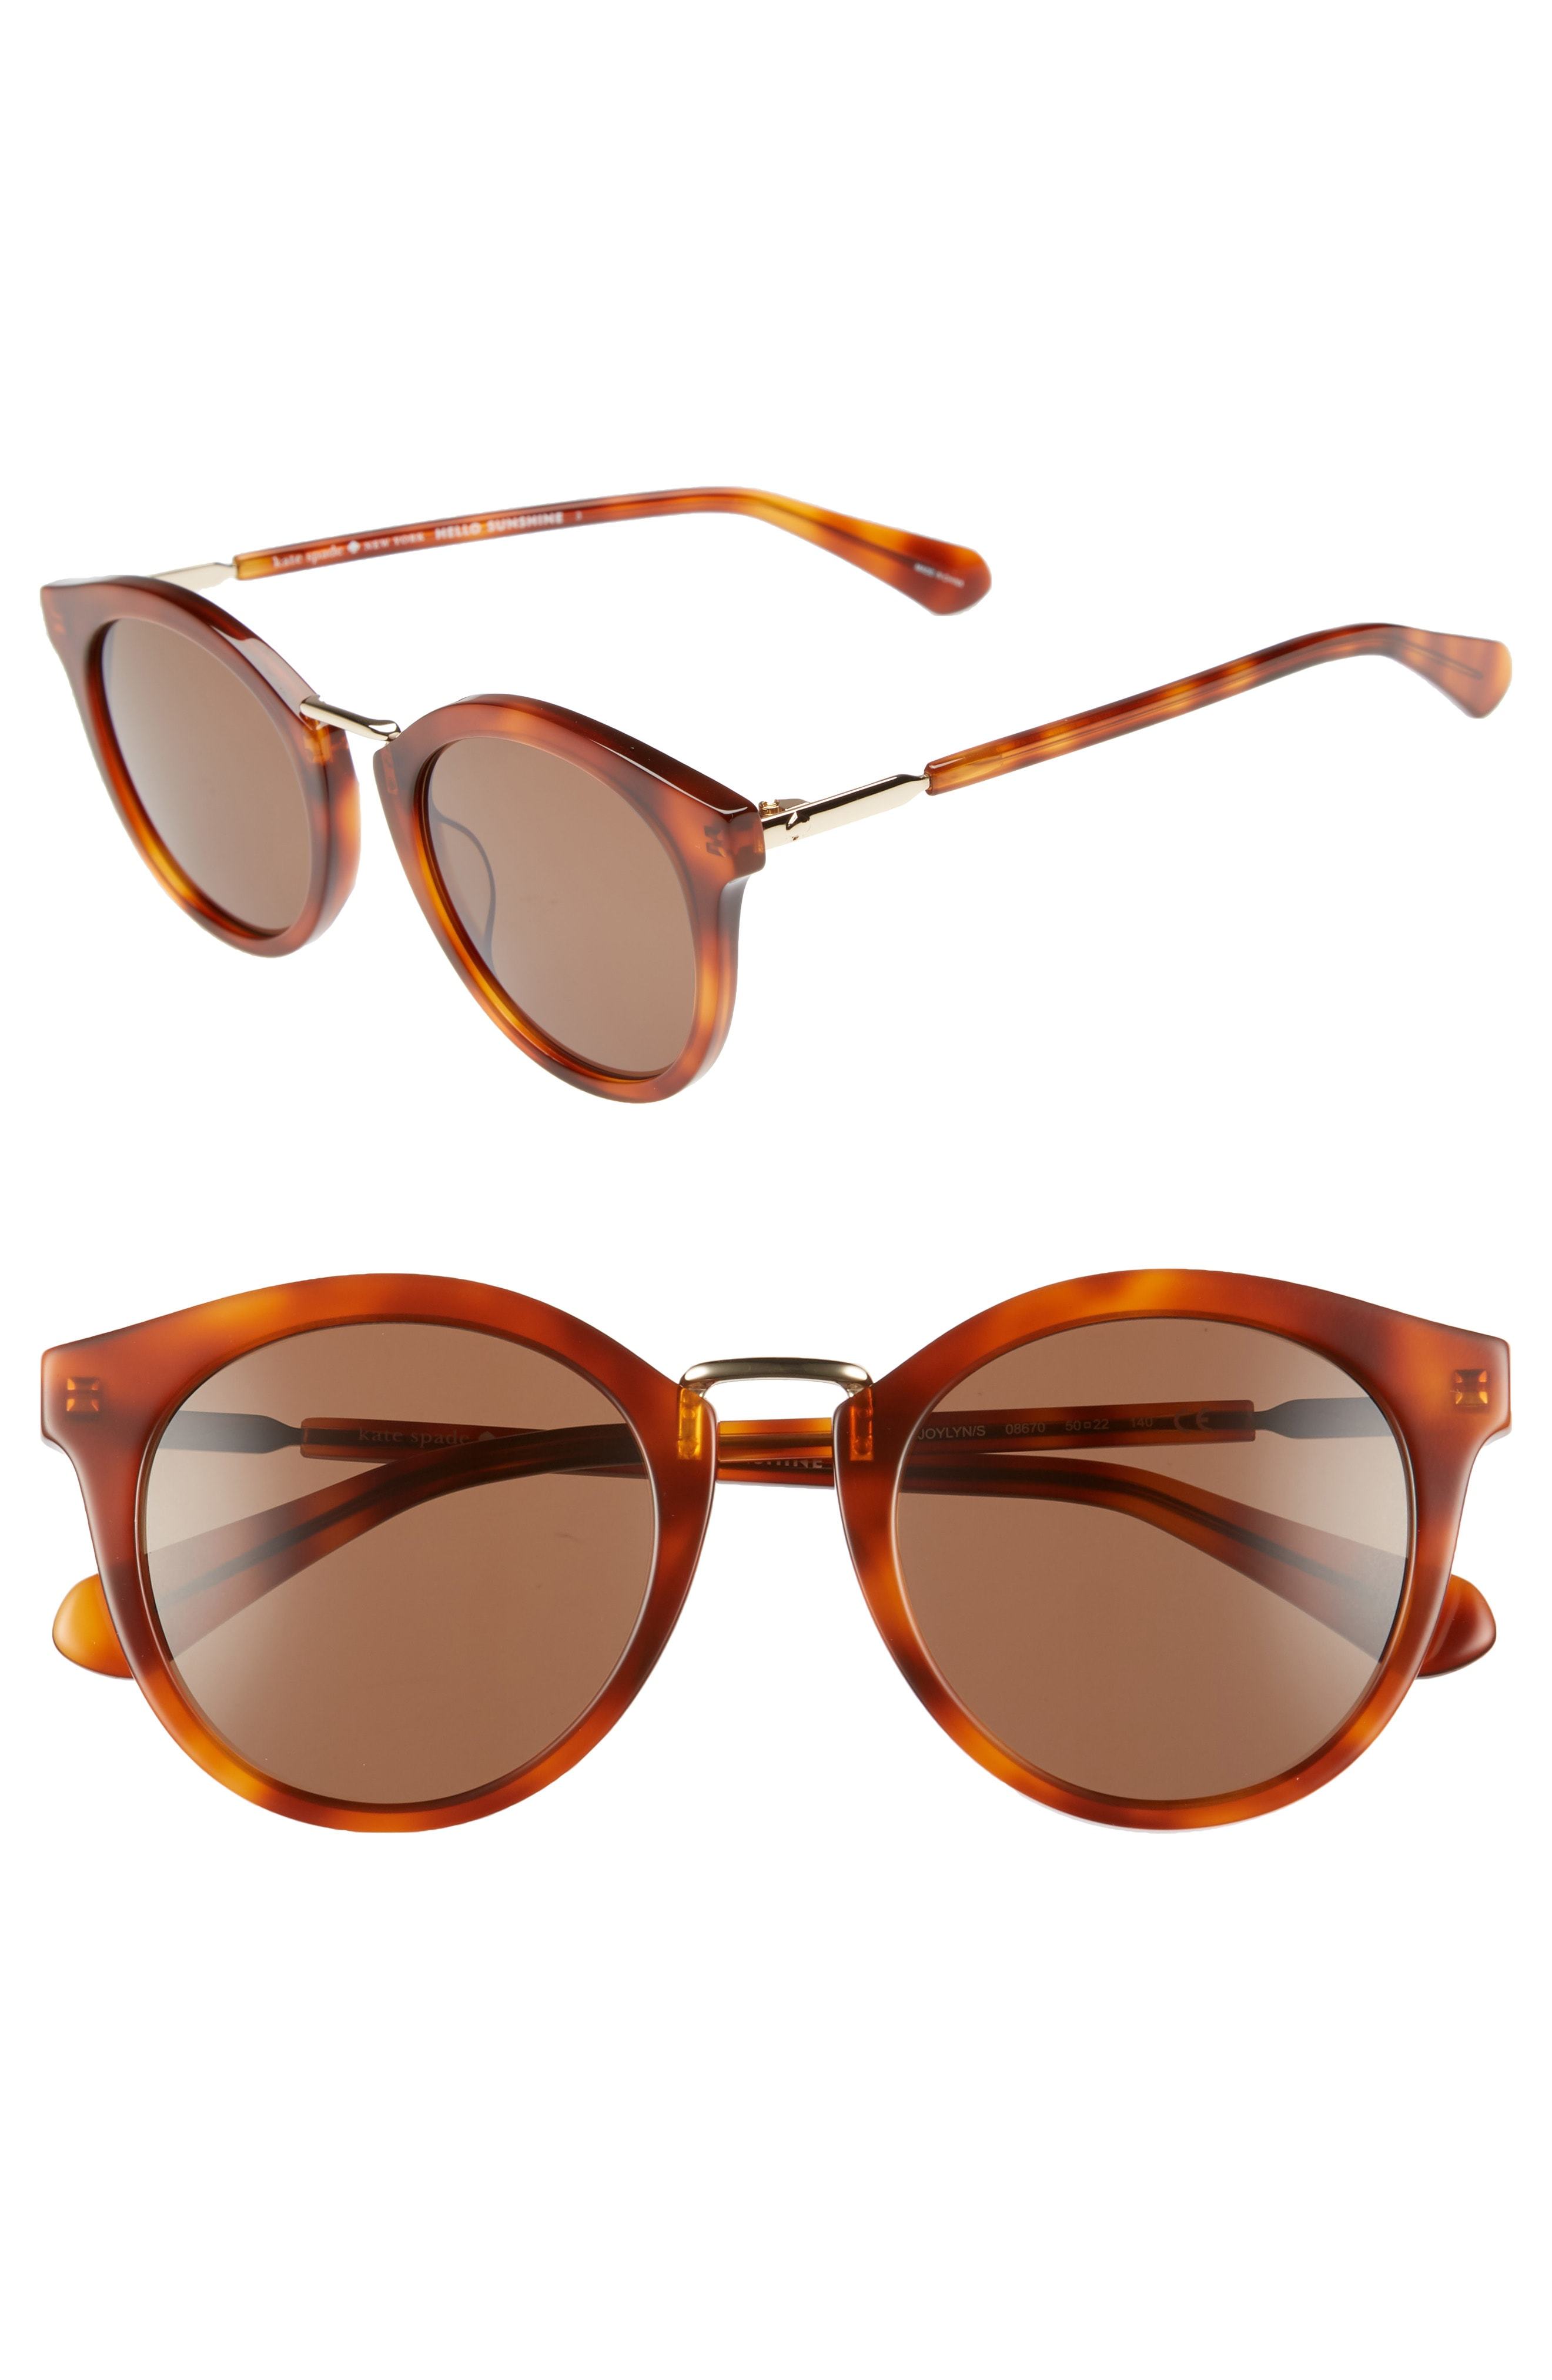 kate spade new york Joylyn 50mm Round Sunglasses, $180 | Nordstrom |  Lookastic